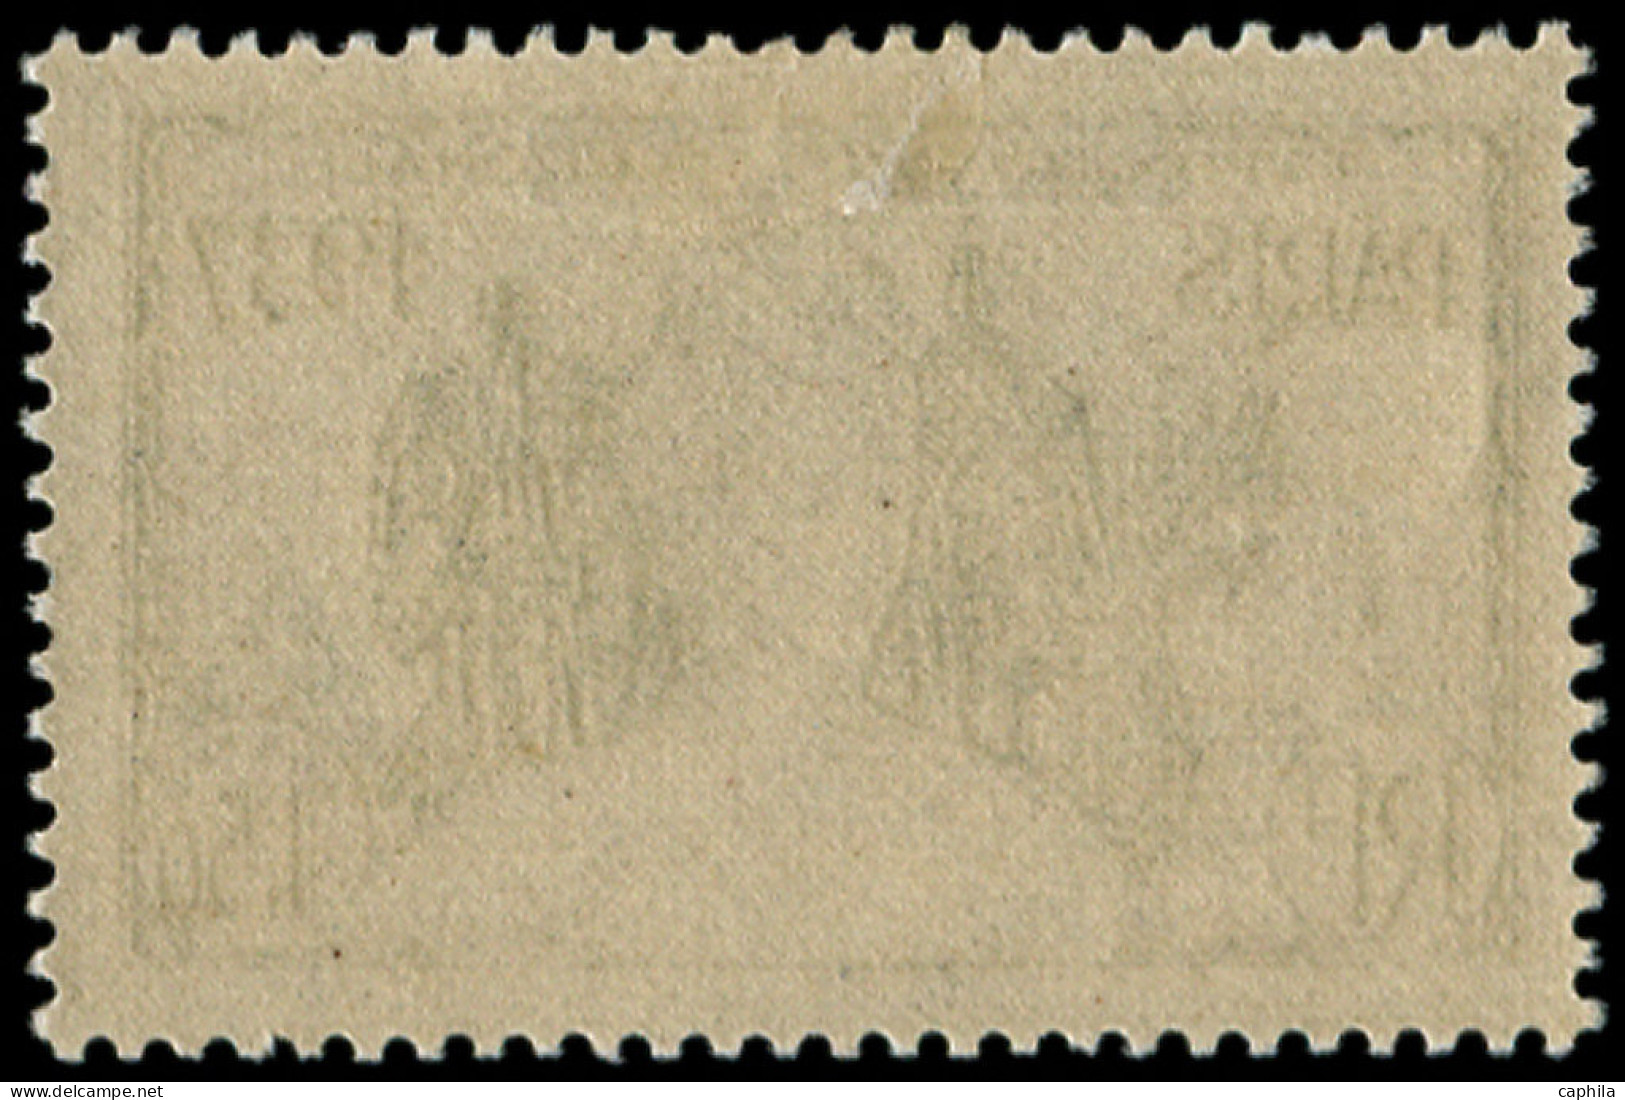 * COTE DES SOMALIS - Poste - 146a, Légende Du Pays Renversée: Expo De 1937 - Unused Stamps